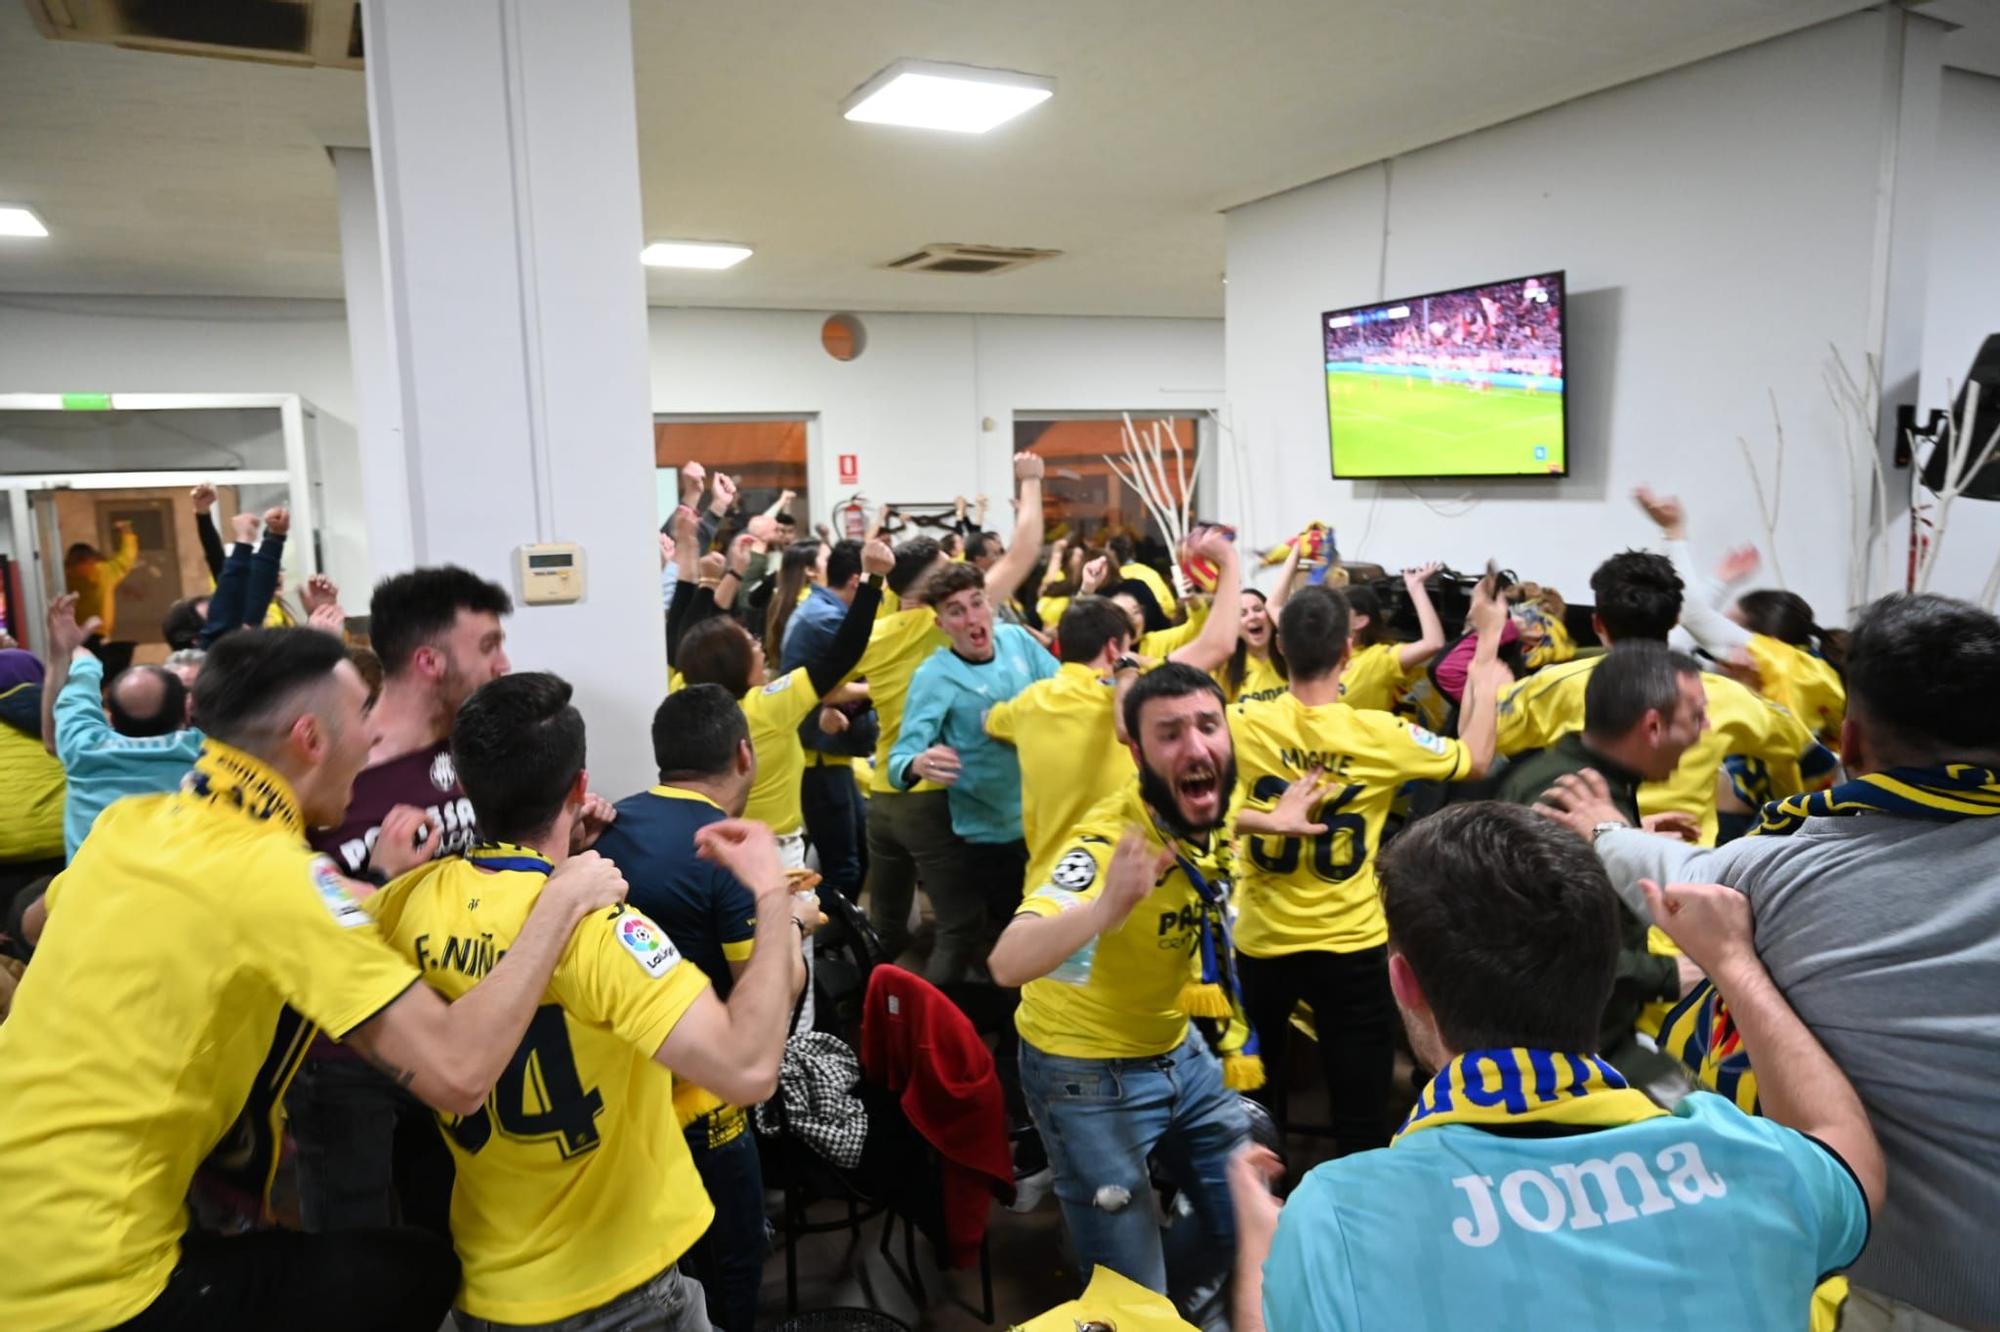 GALERÍA | Así ha vivido Vila-real el épico pase a semifinales